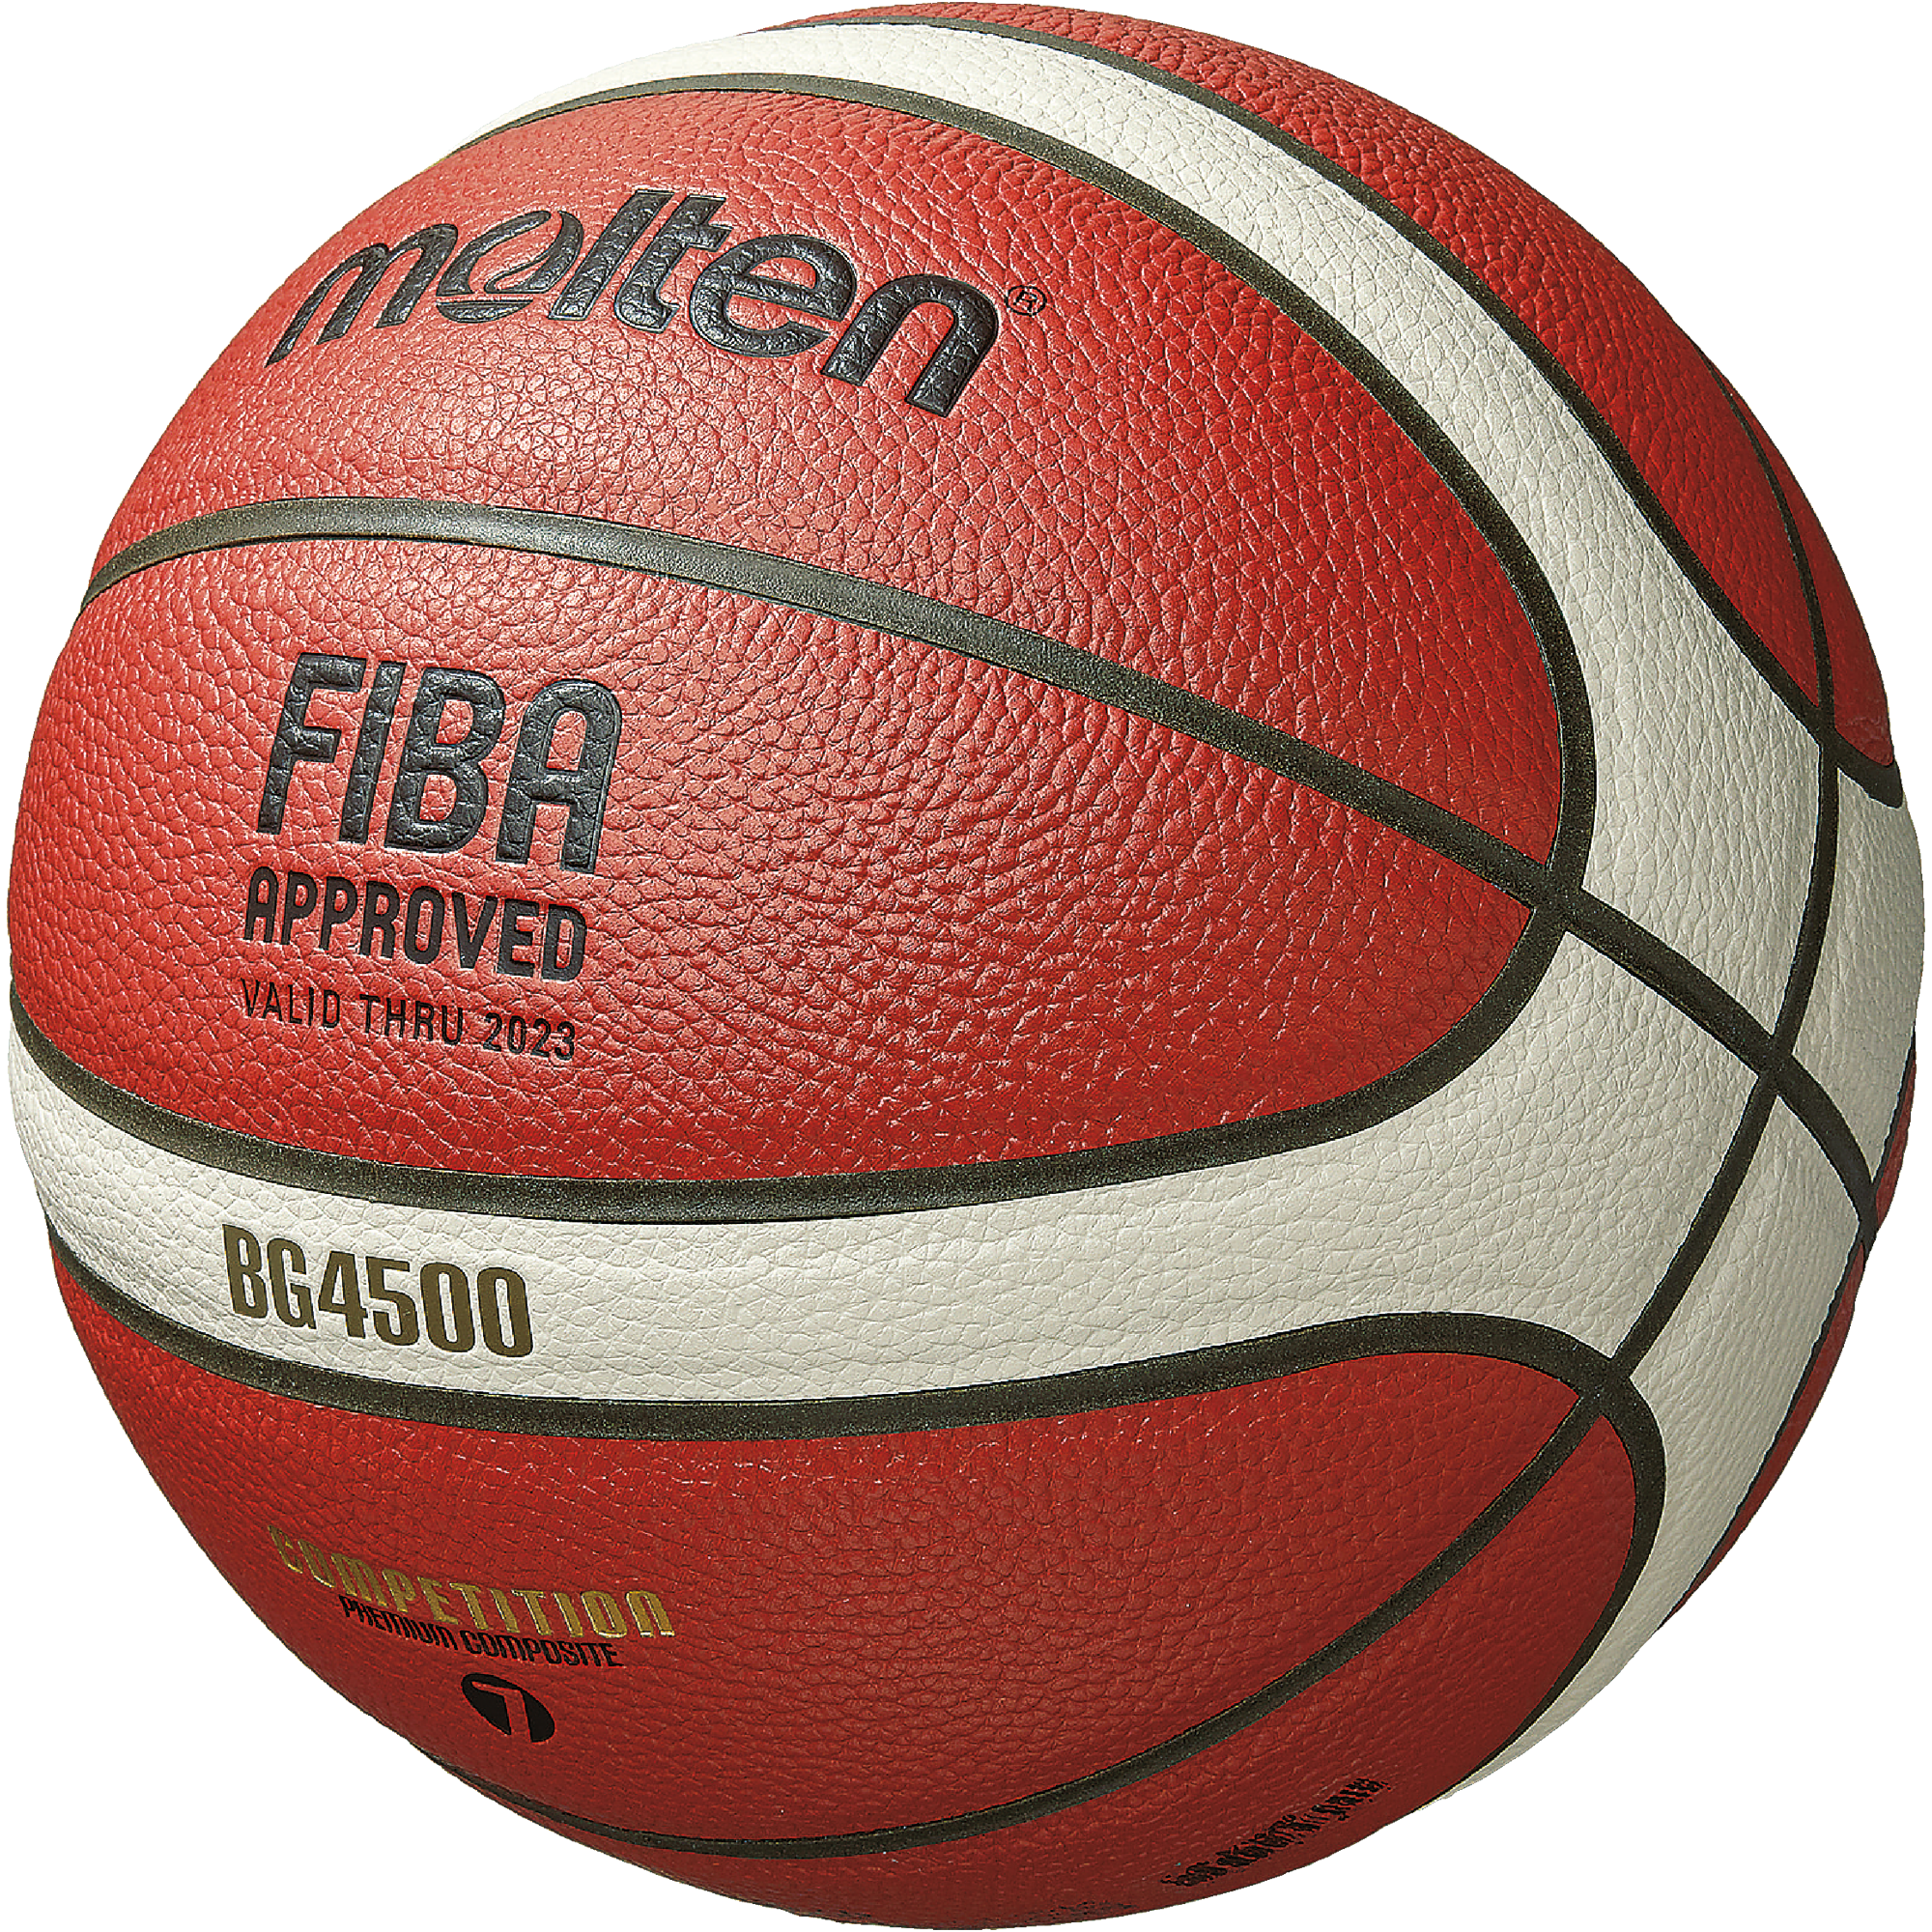 Basketball Gr. 7 | B7G4500-DBB